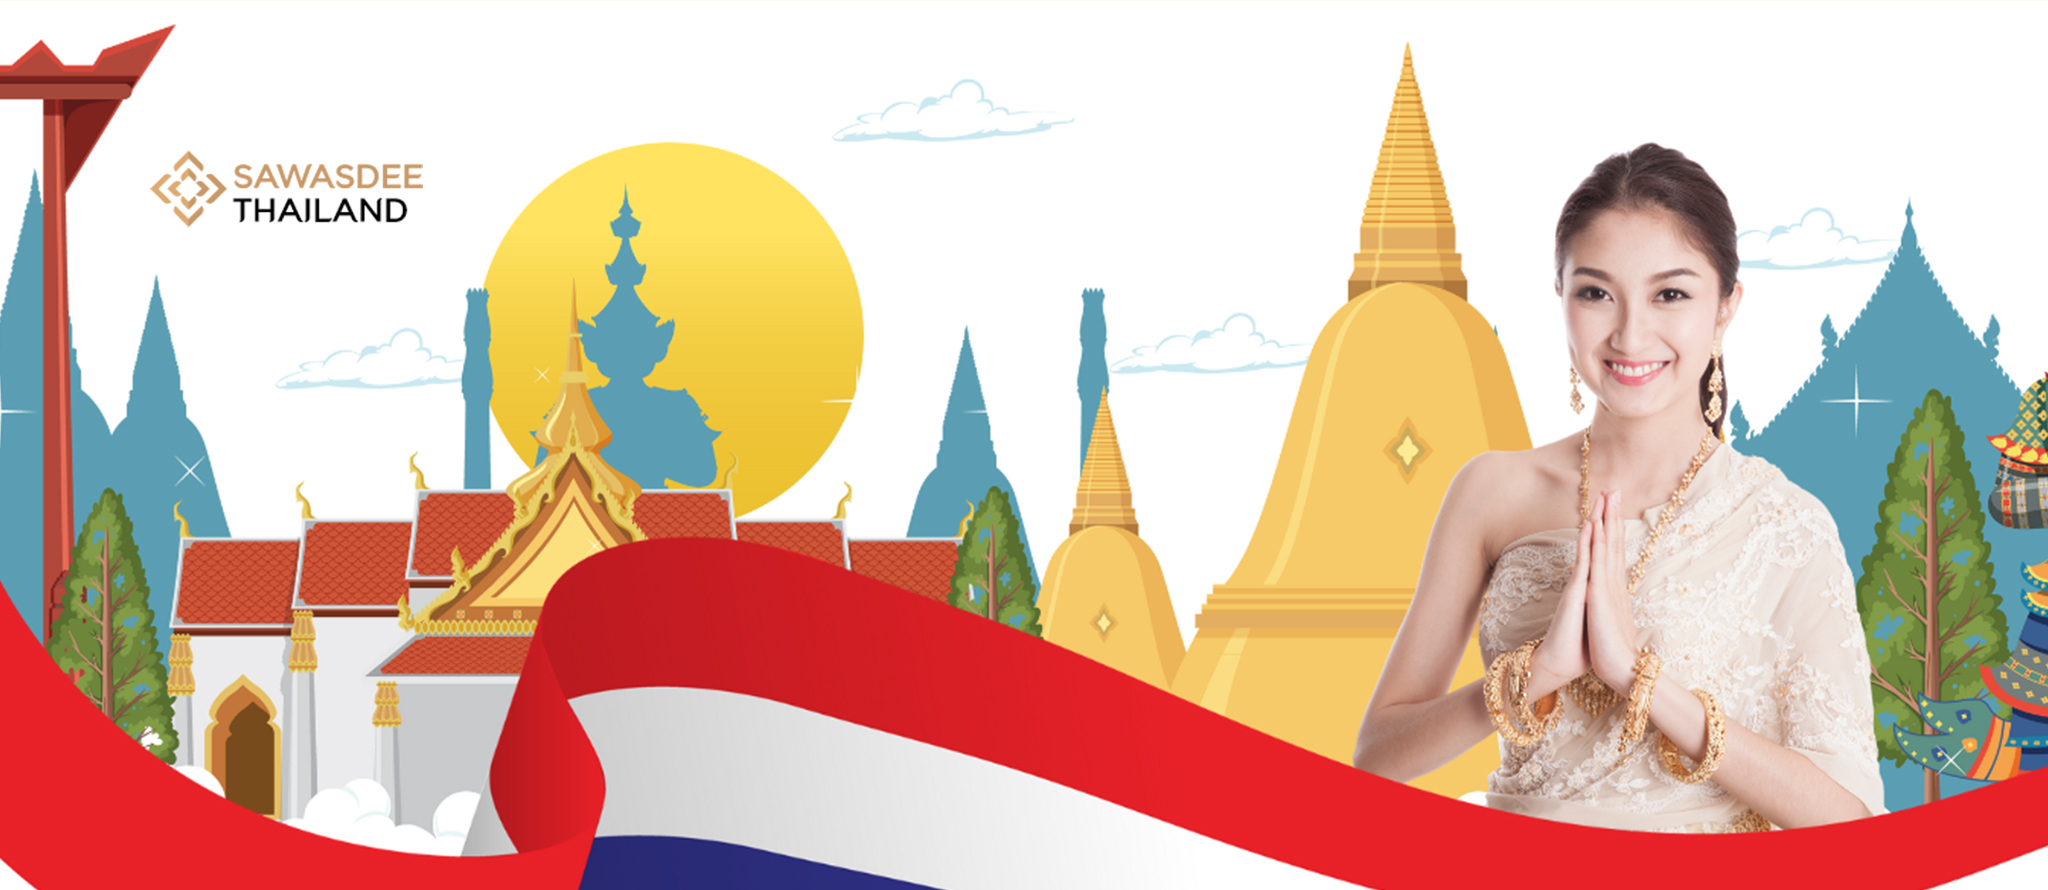 SAWASDEE THAILAND